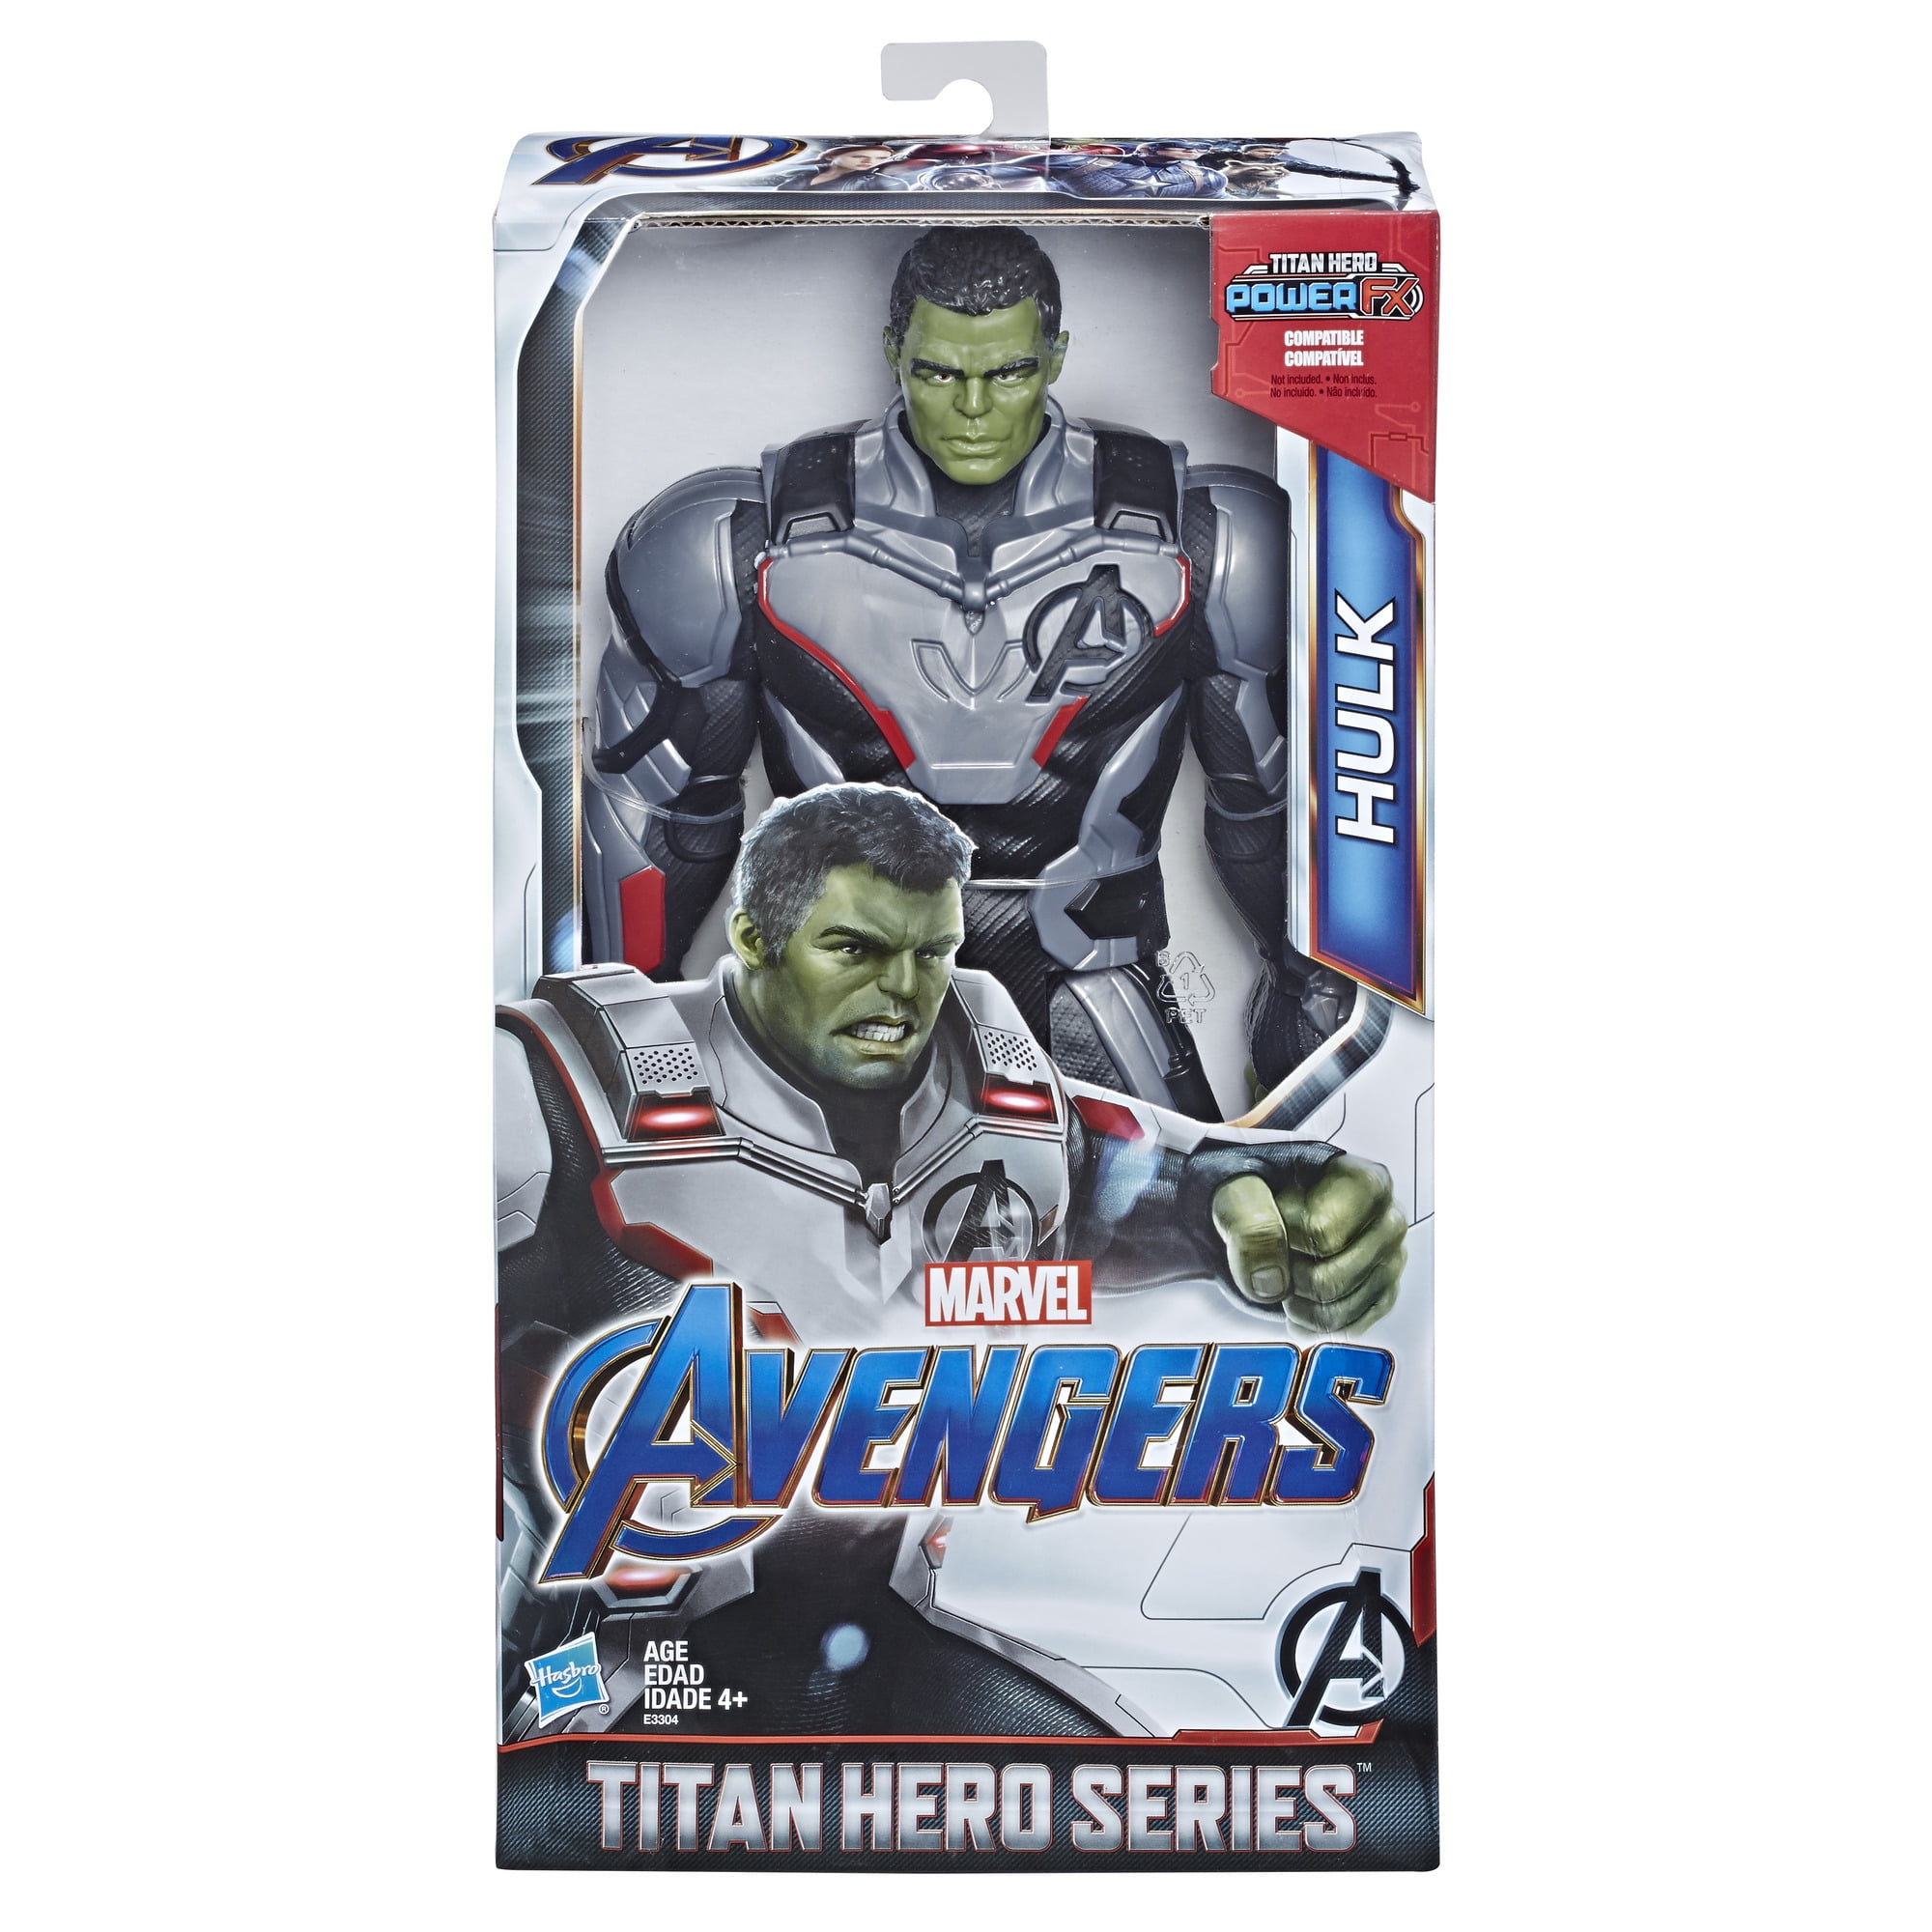 Hasbro Marvel Avengers Titan Hero Series Hulk Action Figure for sale online 